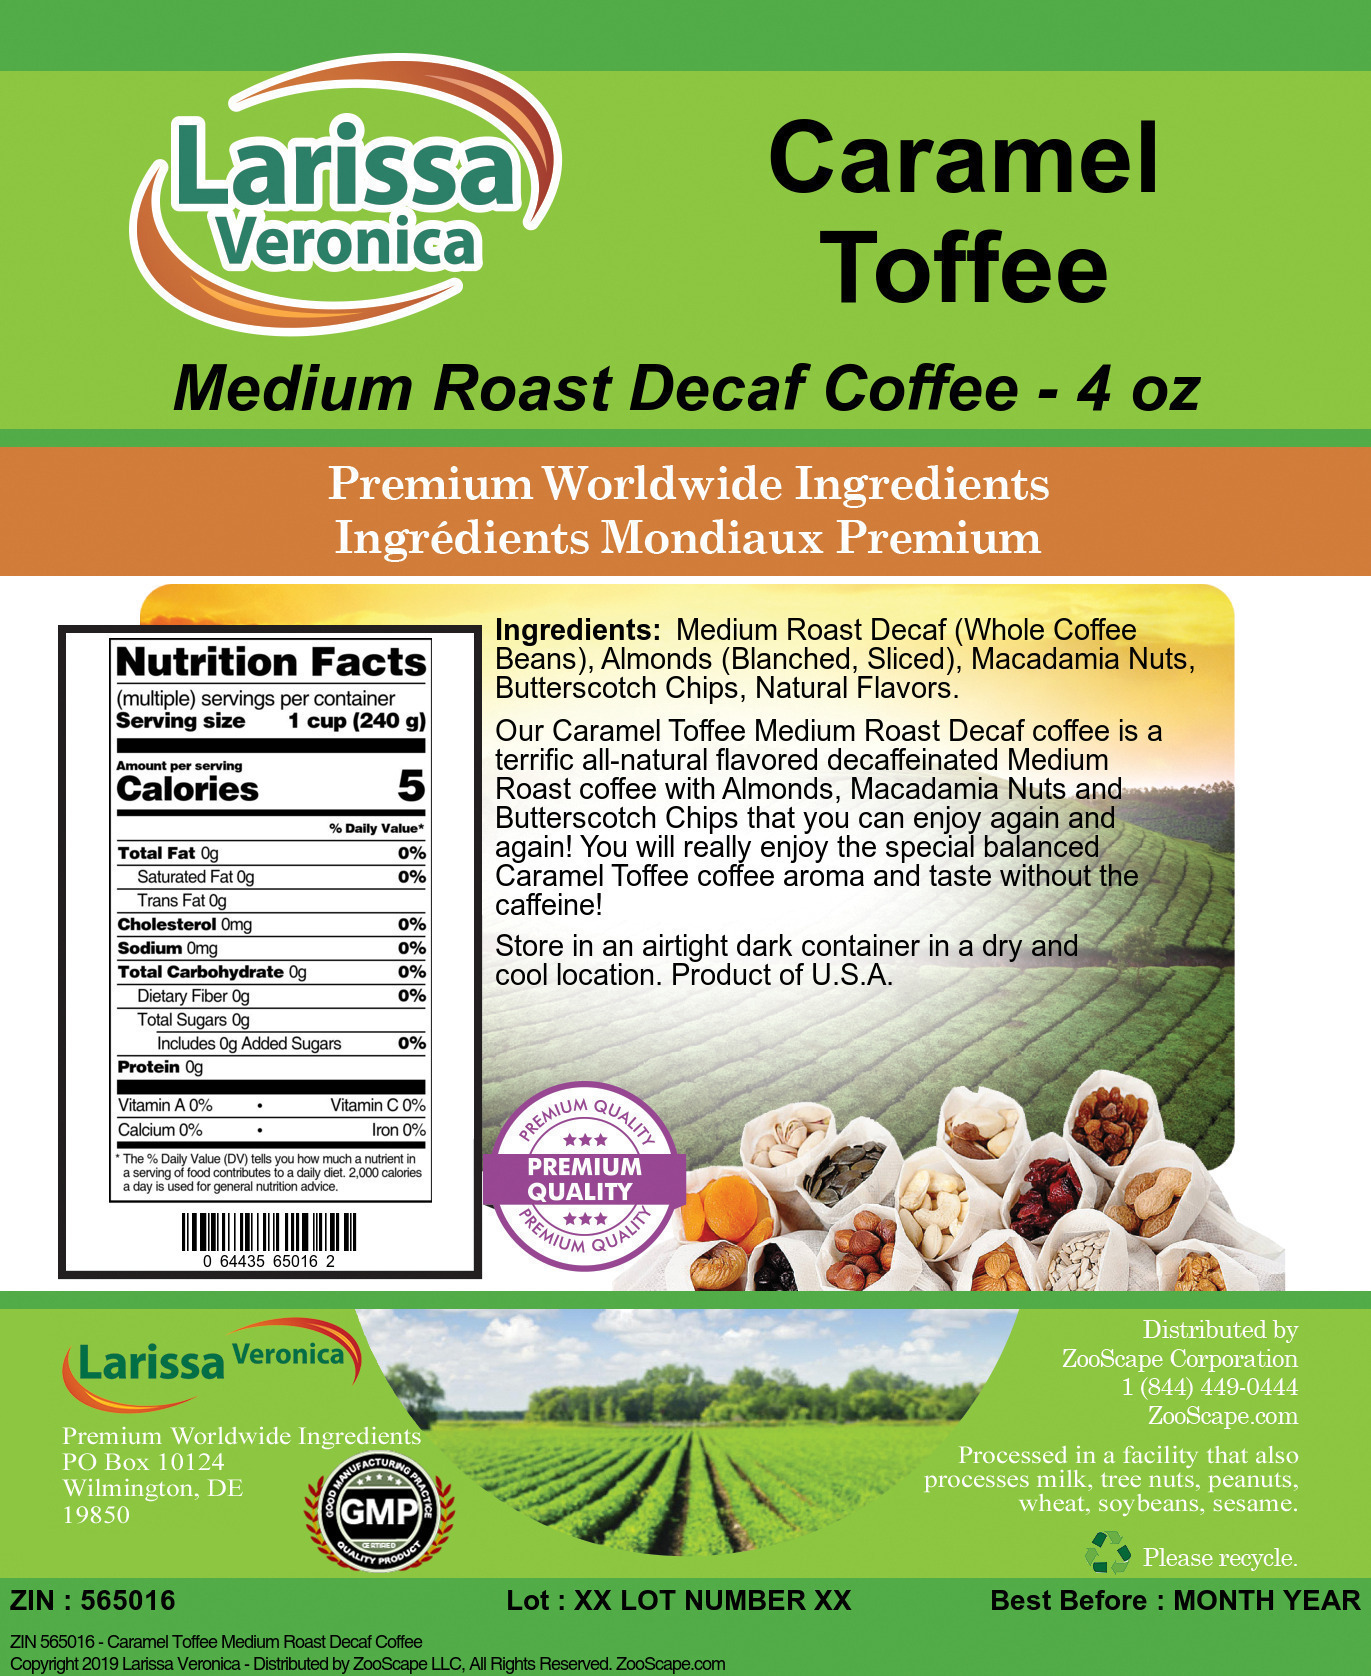 Caramel Toffee Medium Roast Decaf Coffee - Label